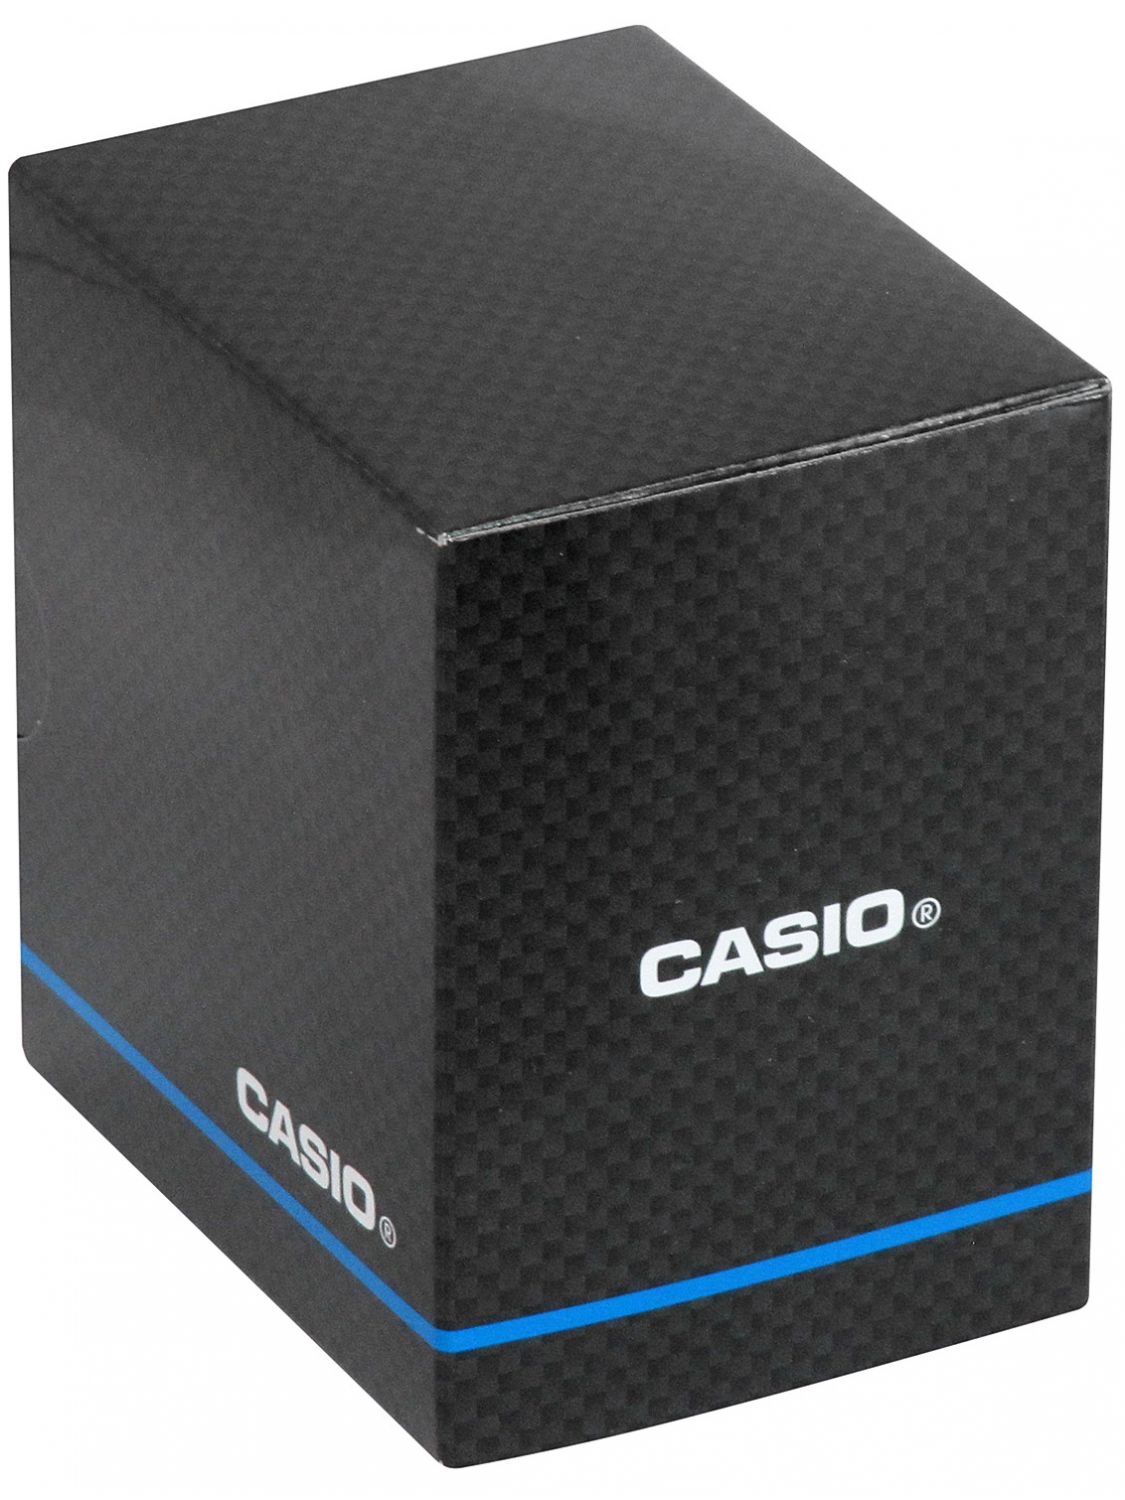 Casio Men\'s Watch Quartz • Steel/Turquoise uhrcenter MTP-B145D-2A1VEF